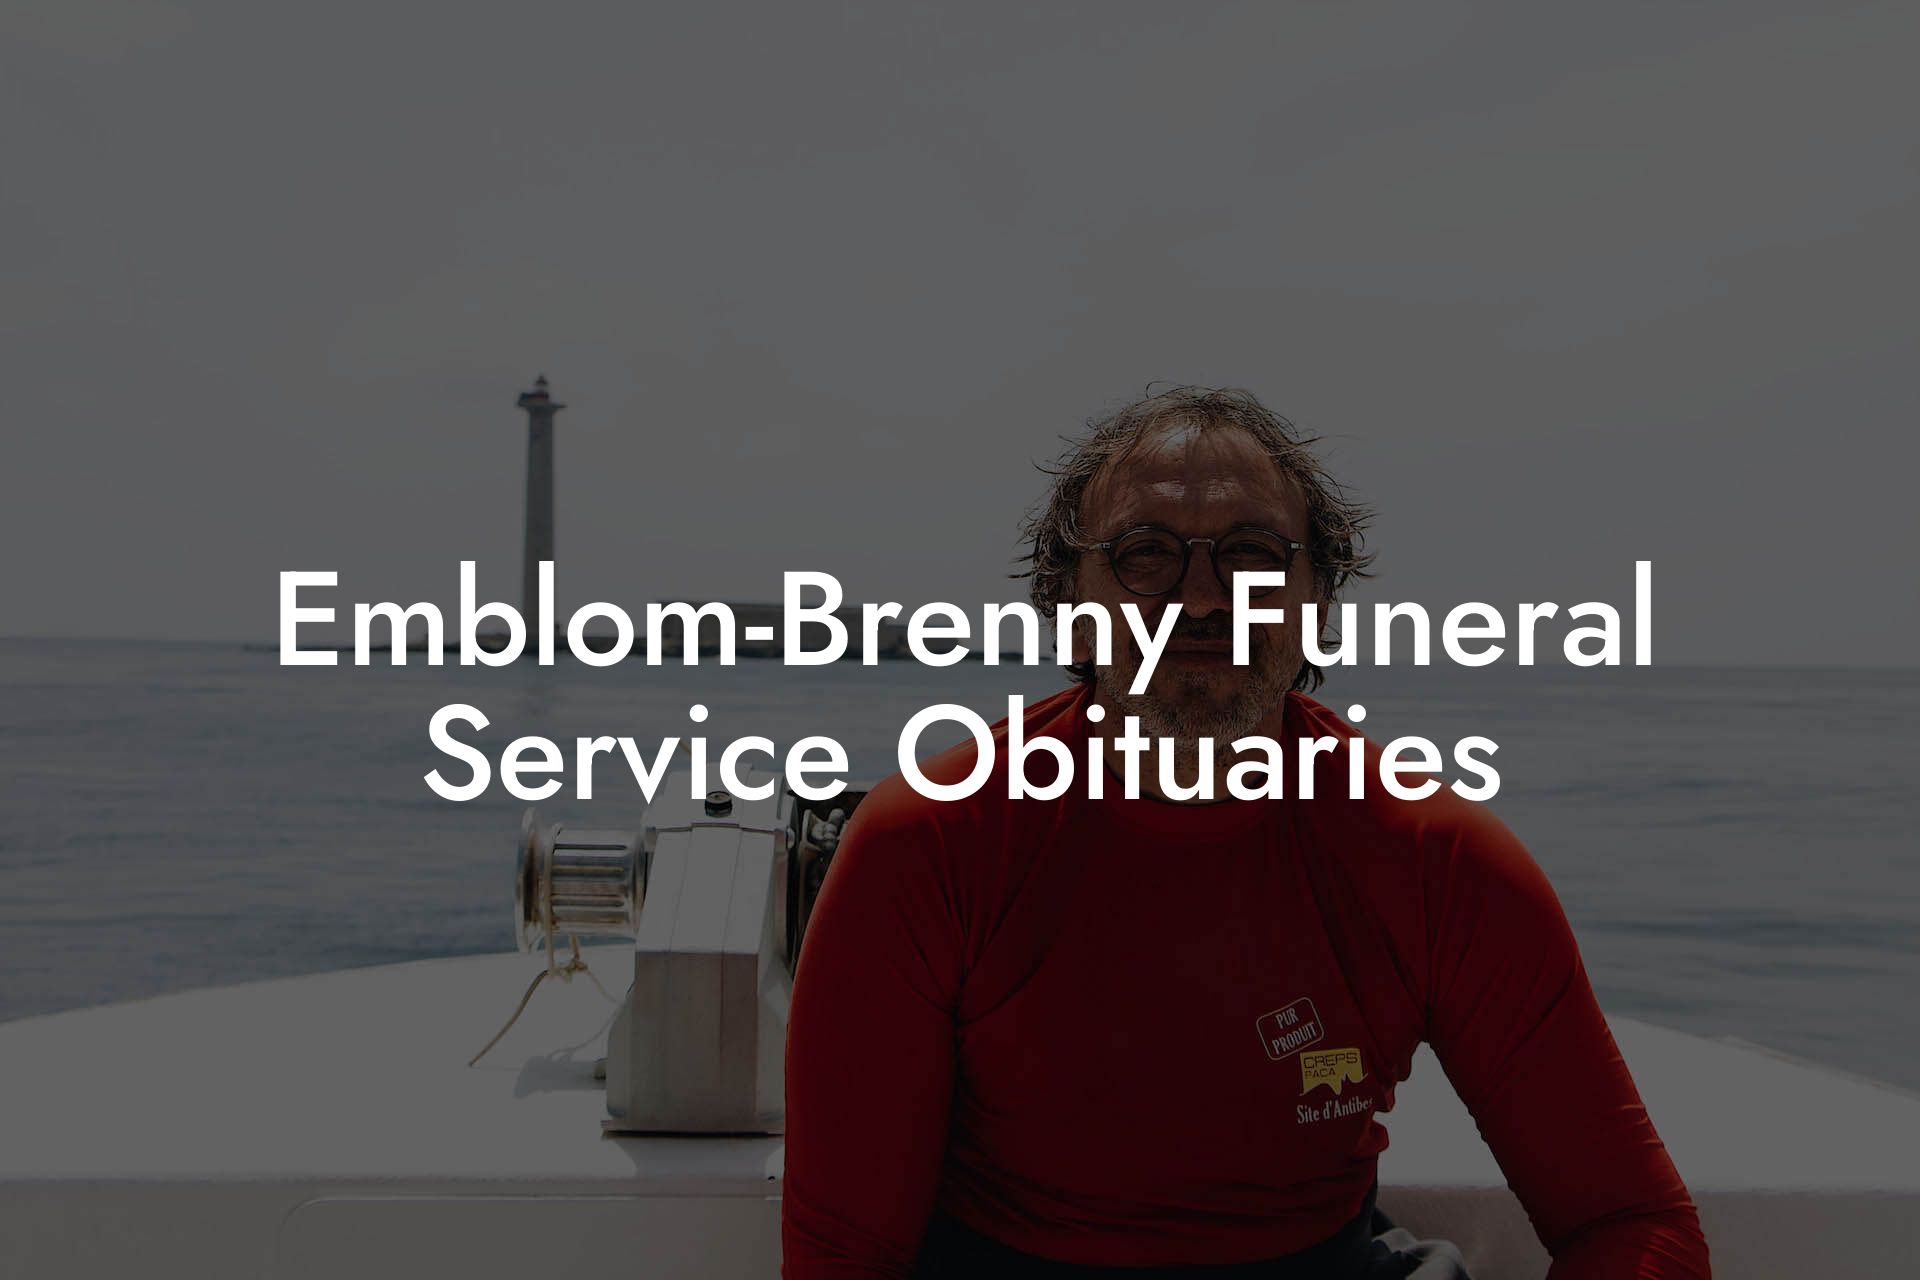 Emblom-Brenny Funeral Service Obituaries